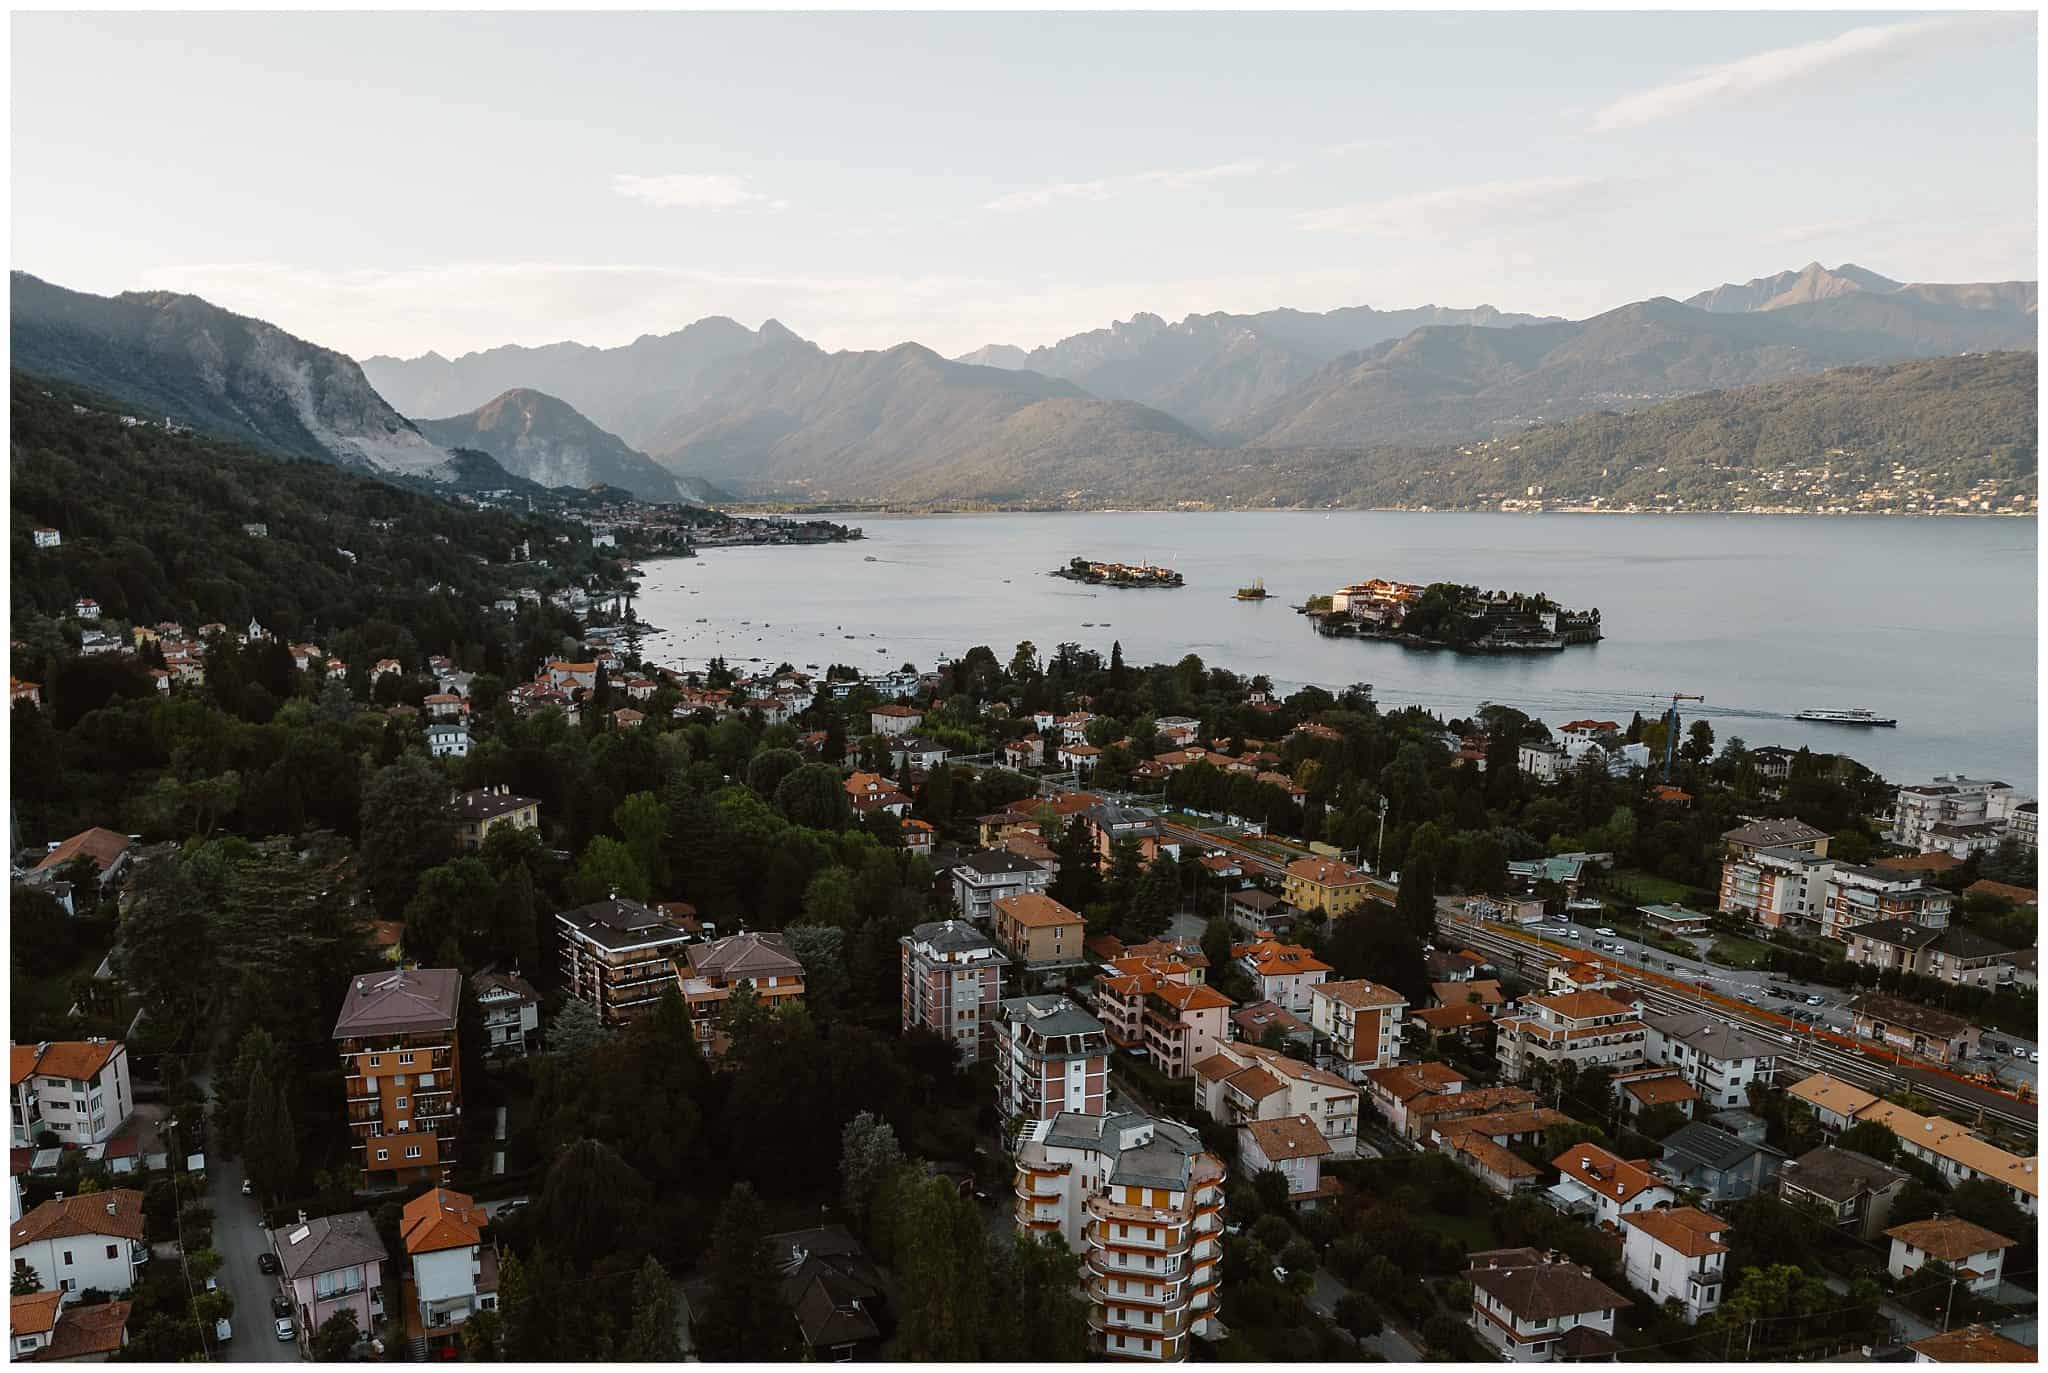 a view of lago maggiore, a major italian wedding destination in Piedmont